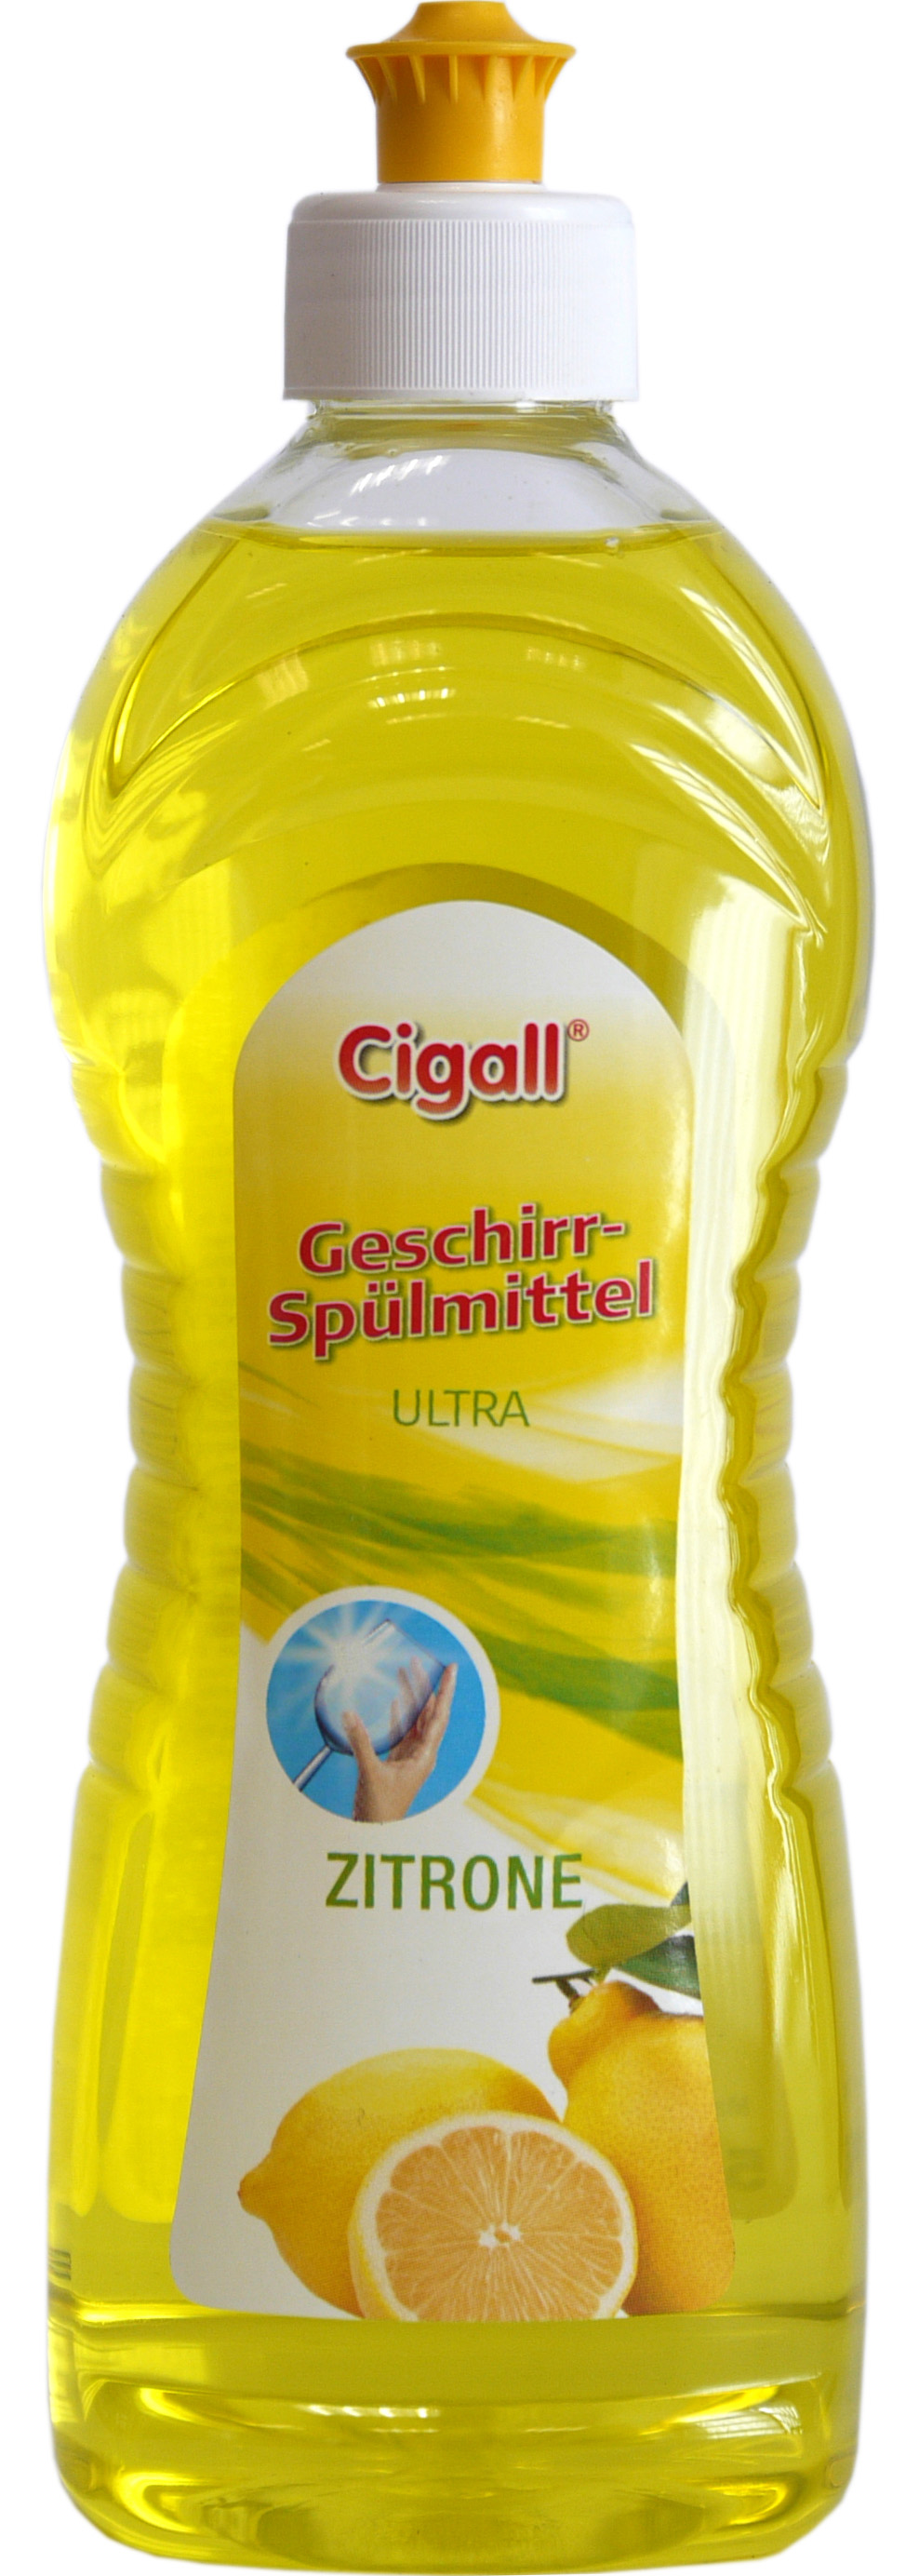 01636 - Cigall Geschirrspülmittel Zitrone 500 ml